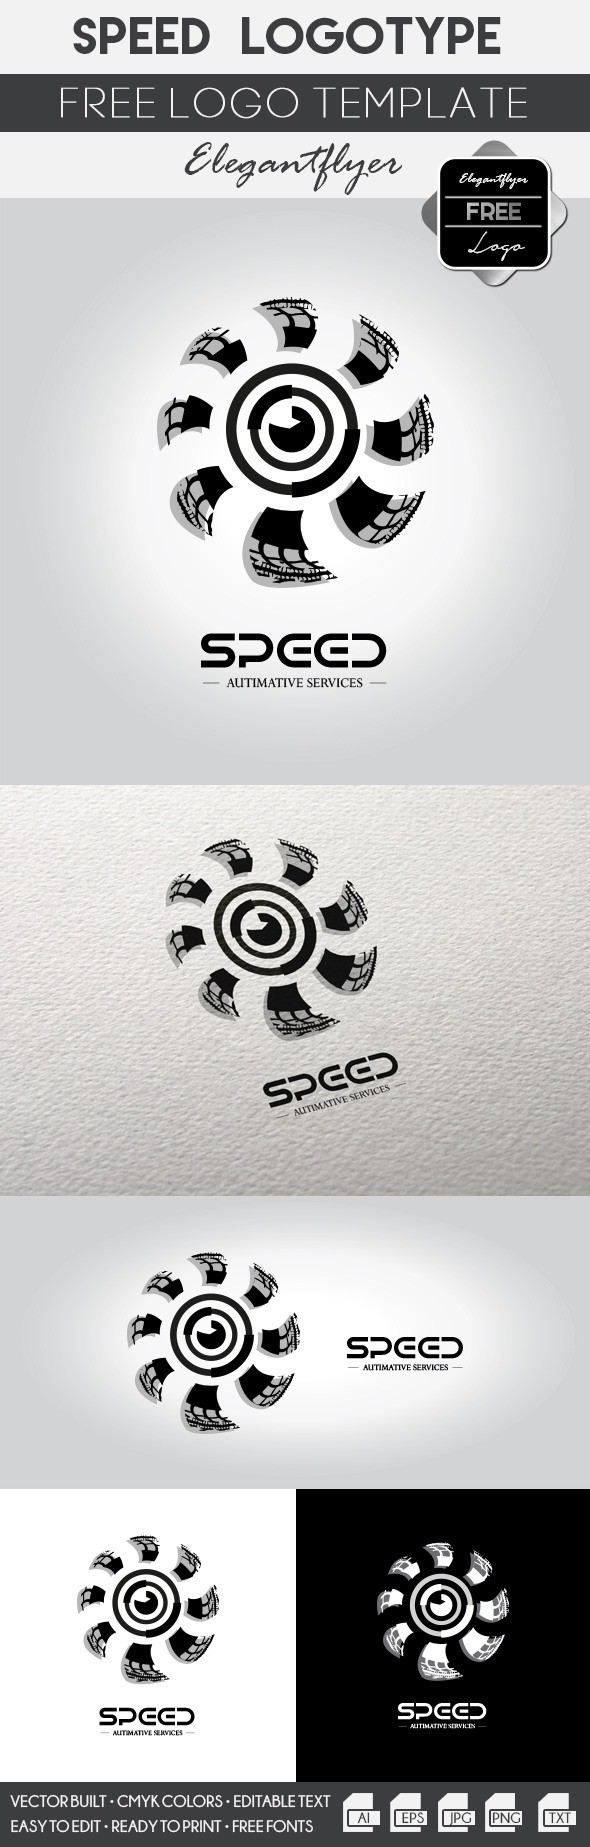 Speed logo by ElegantFlyer